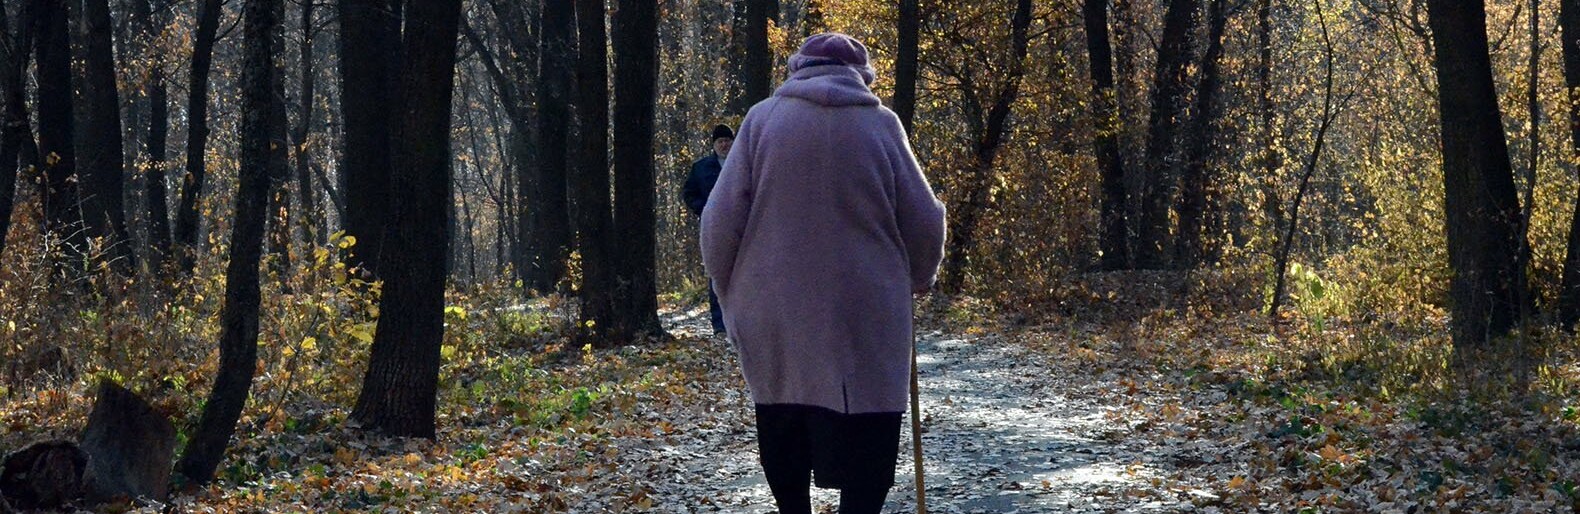 Сбившего 90-летнюю пенсионерку водителя ищут в Белгородской области